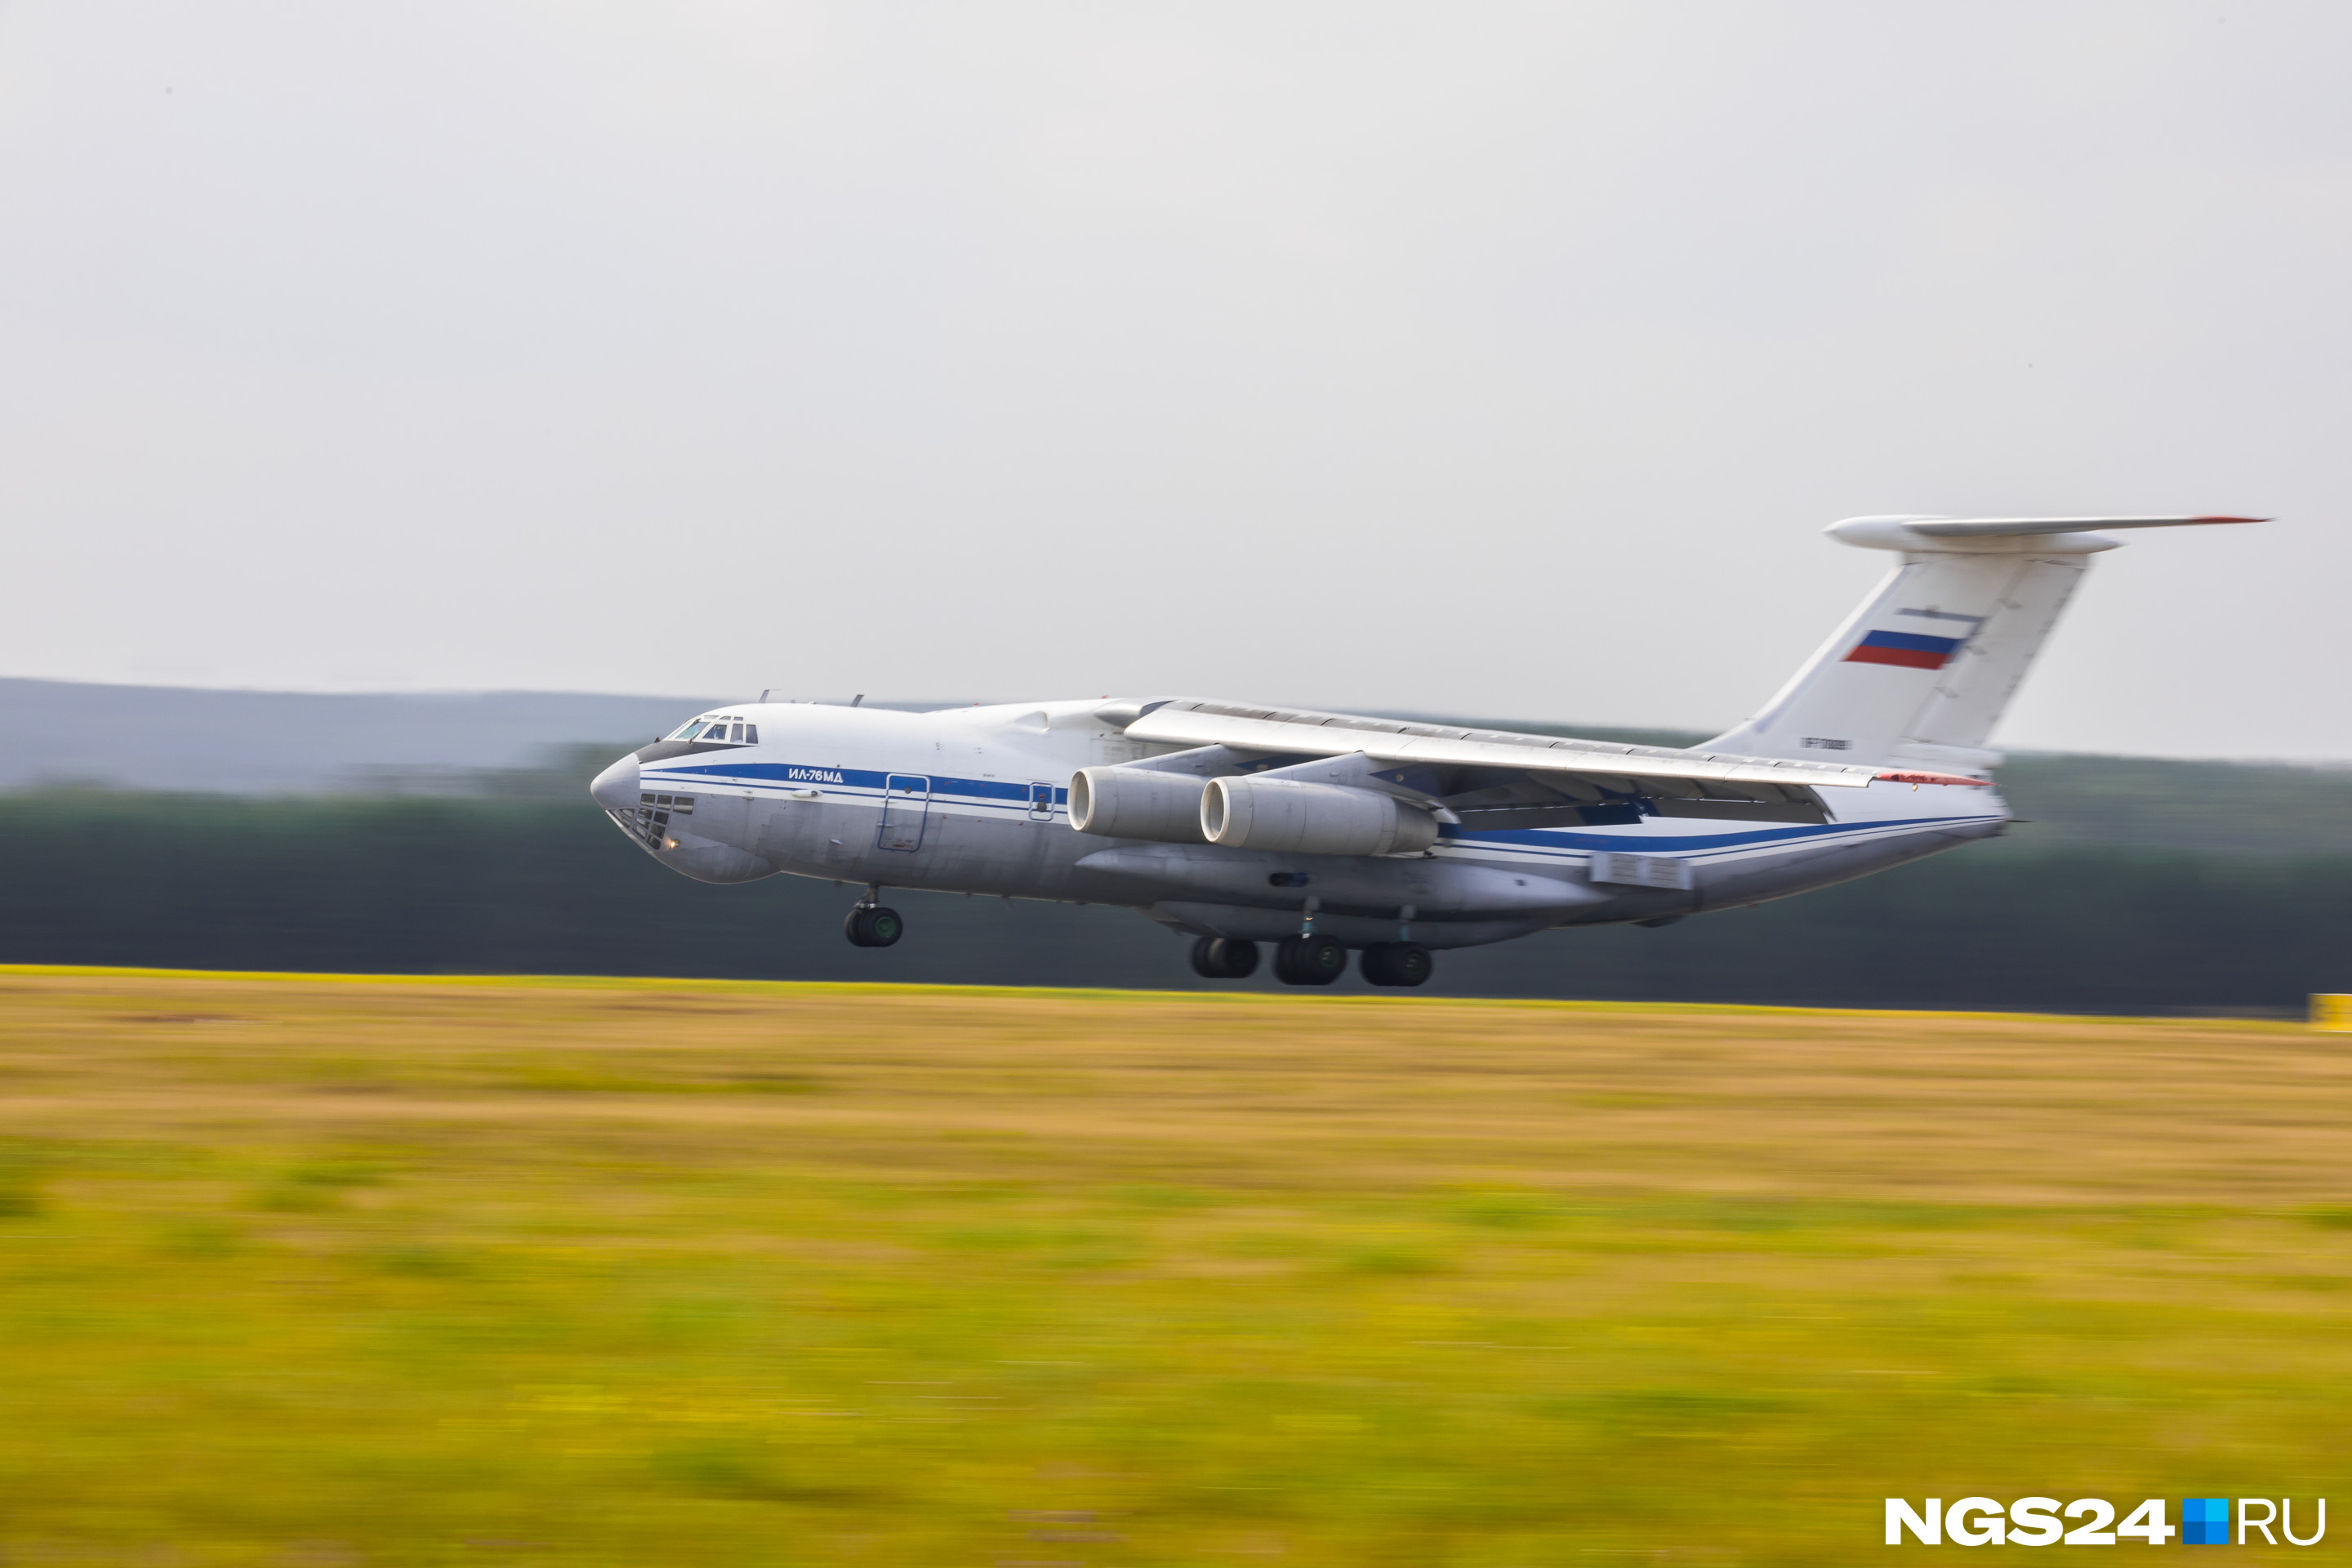 А это самолёт Министерства обороны РФ — военный Ил-76. Именно они помогают тушить пожары в красноярских лесах. Они каждый раз возвращаются в аэропорт на дозаправку